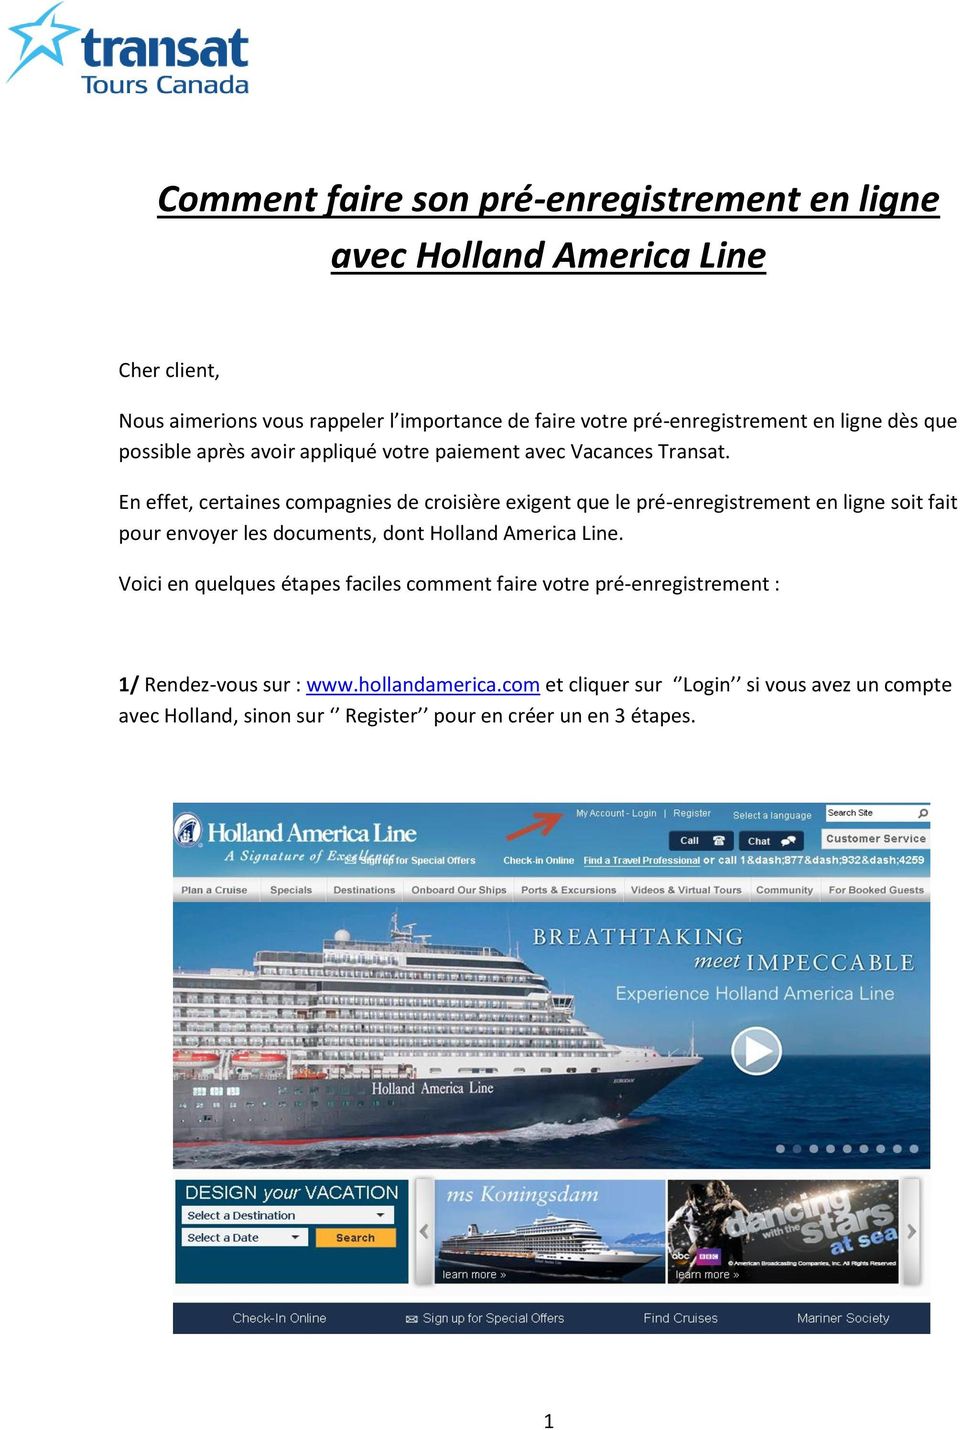 En effet, certaines compagnies de croisière exigent que le pré-enregistrement en ligne soit fait pour envoyer les documents, dont Holland America Line.